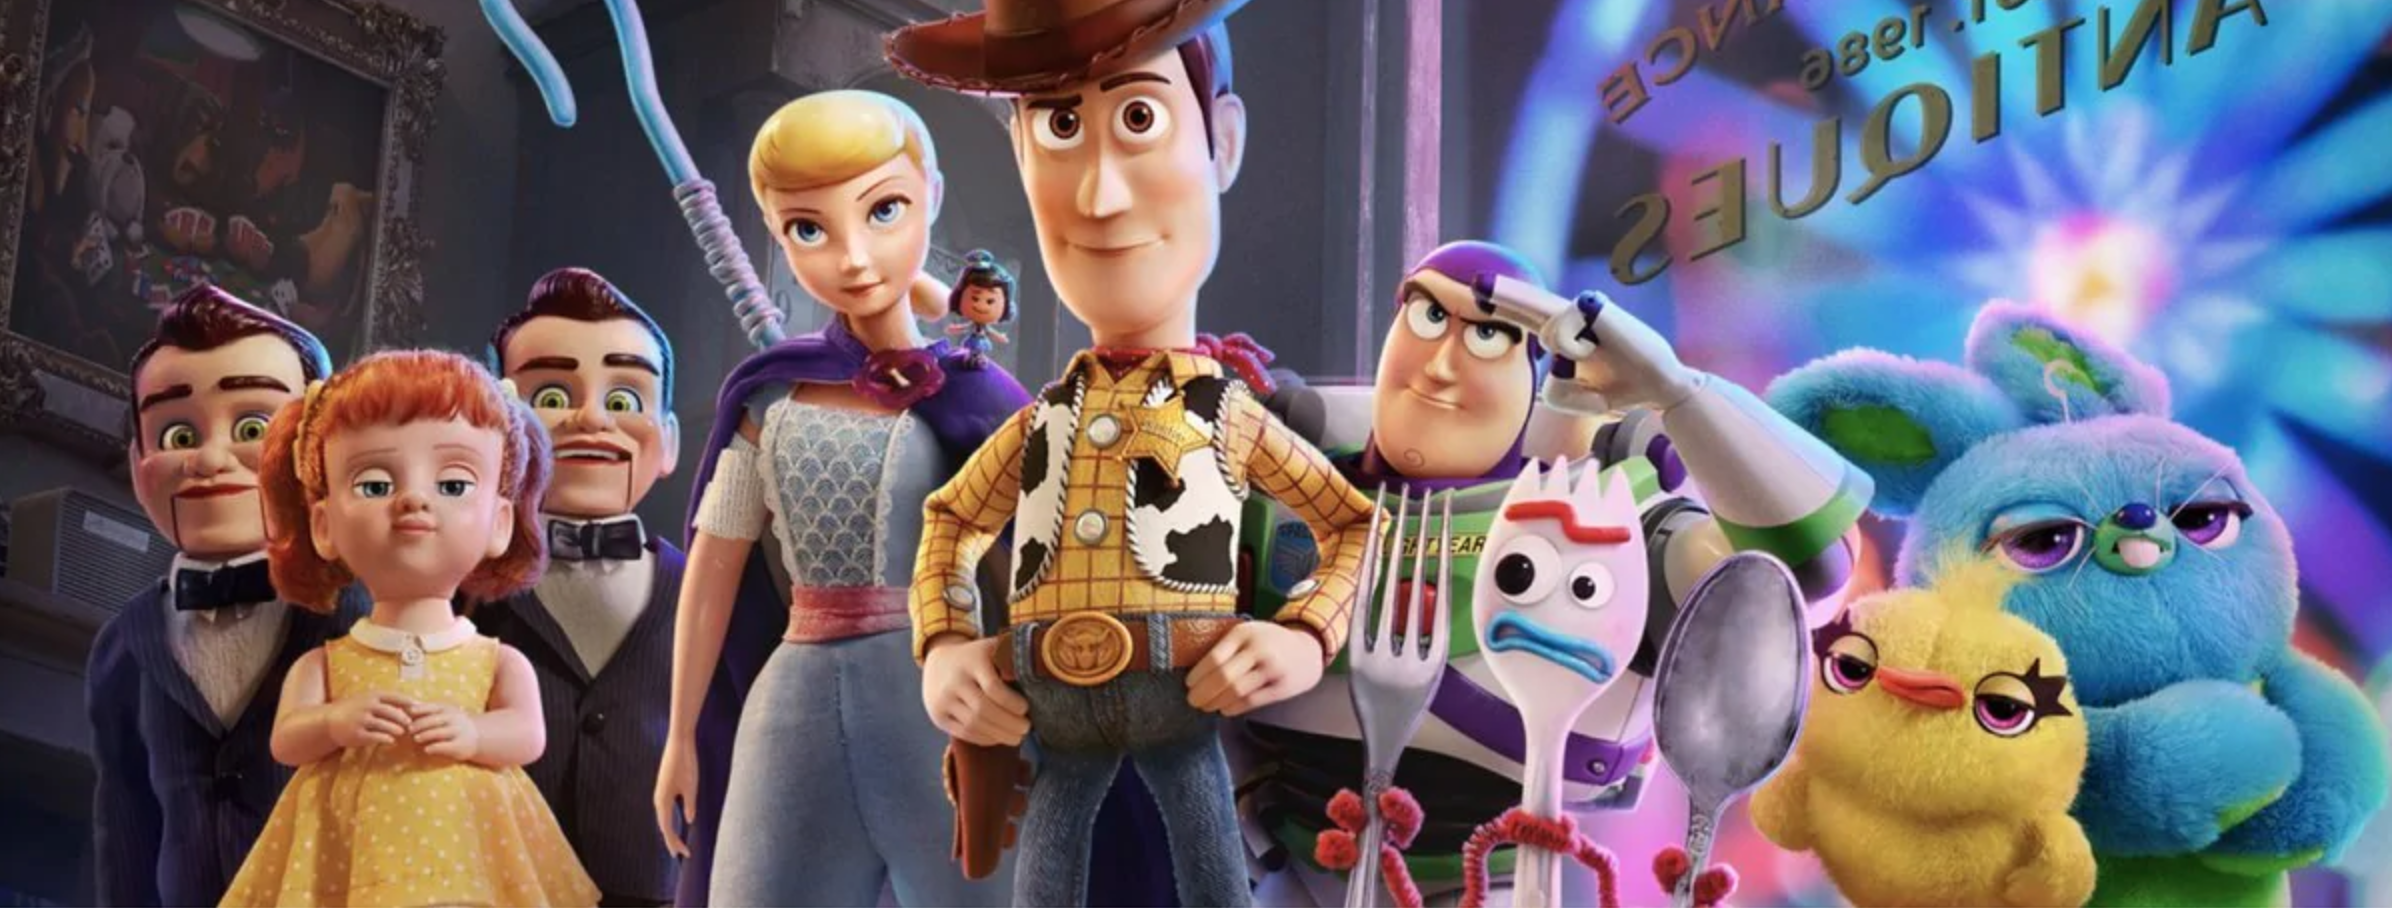 Toy Story 4 et l'intégrale Toy Story disponibles à la Fnac